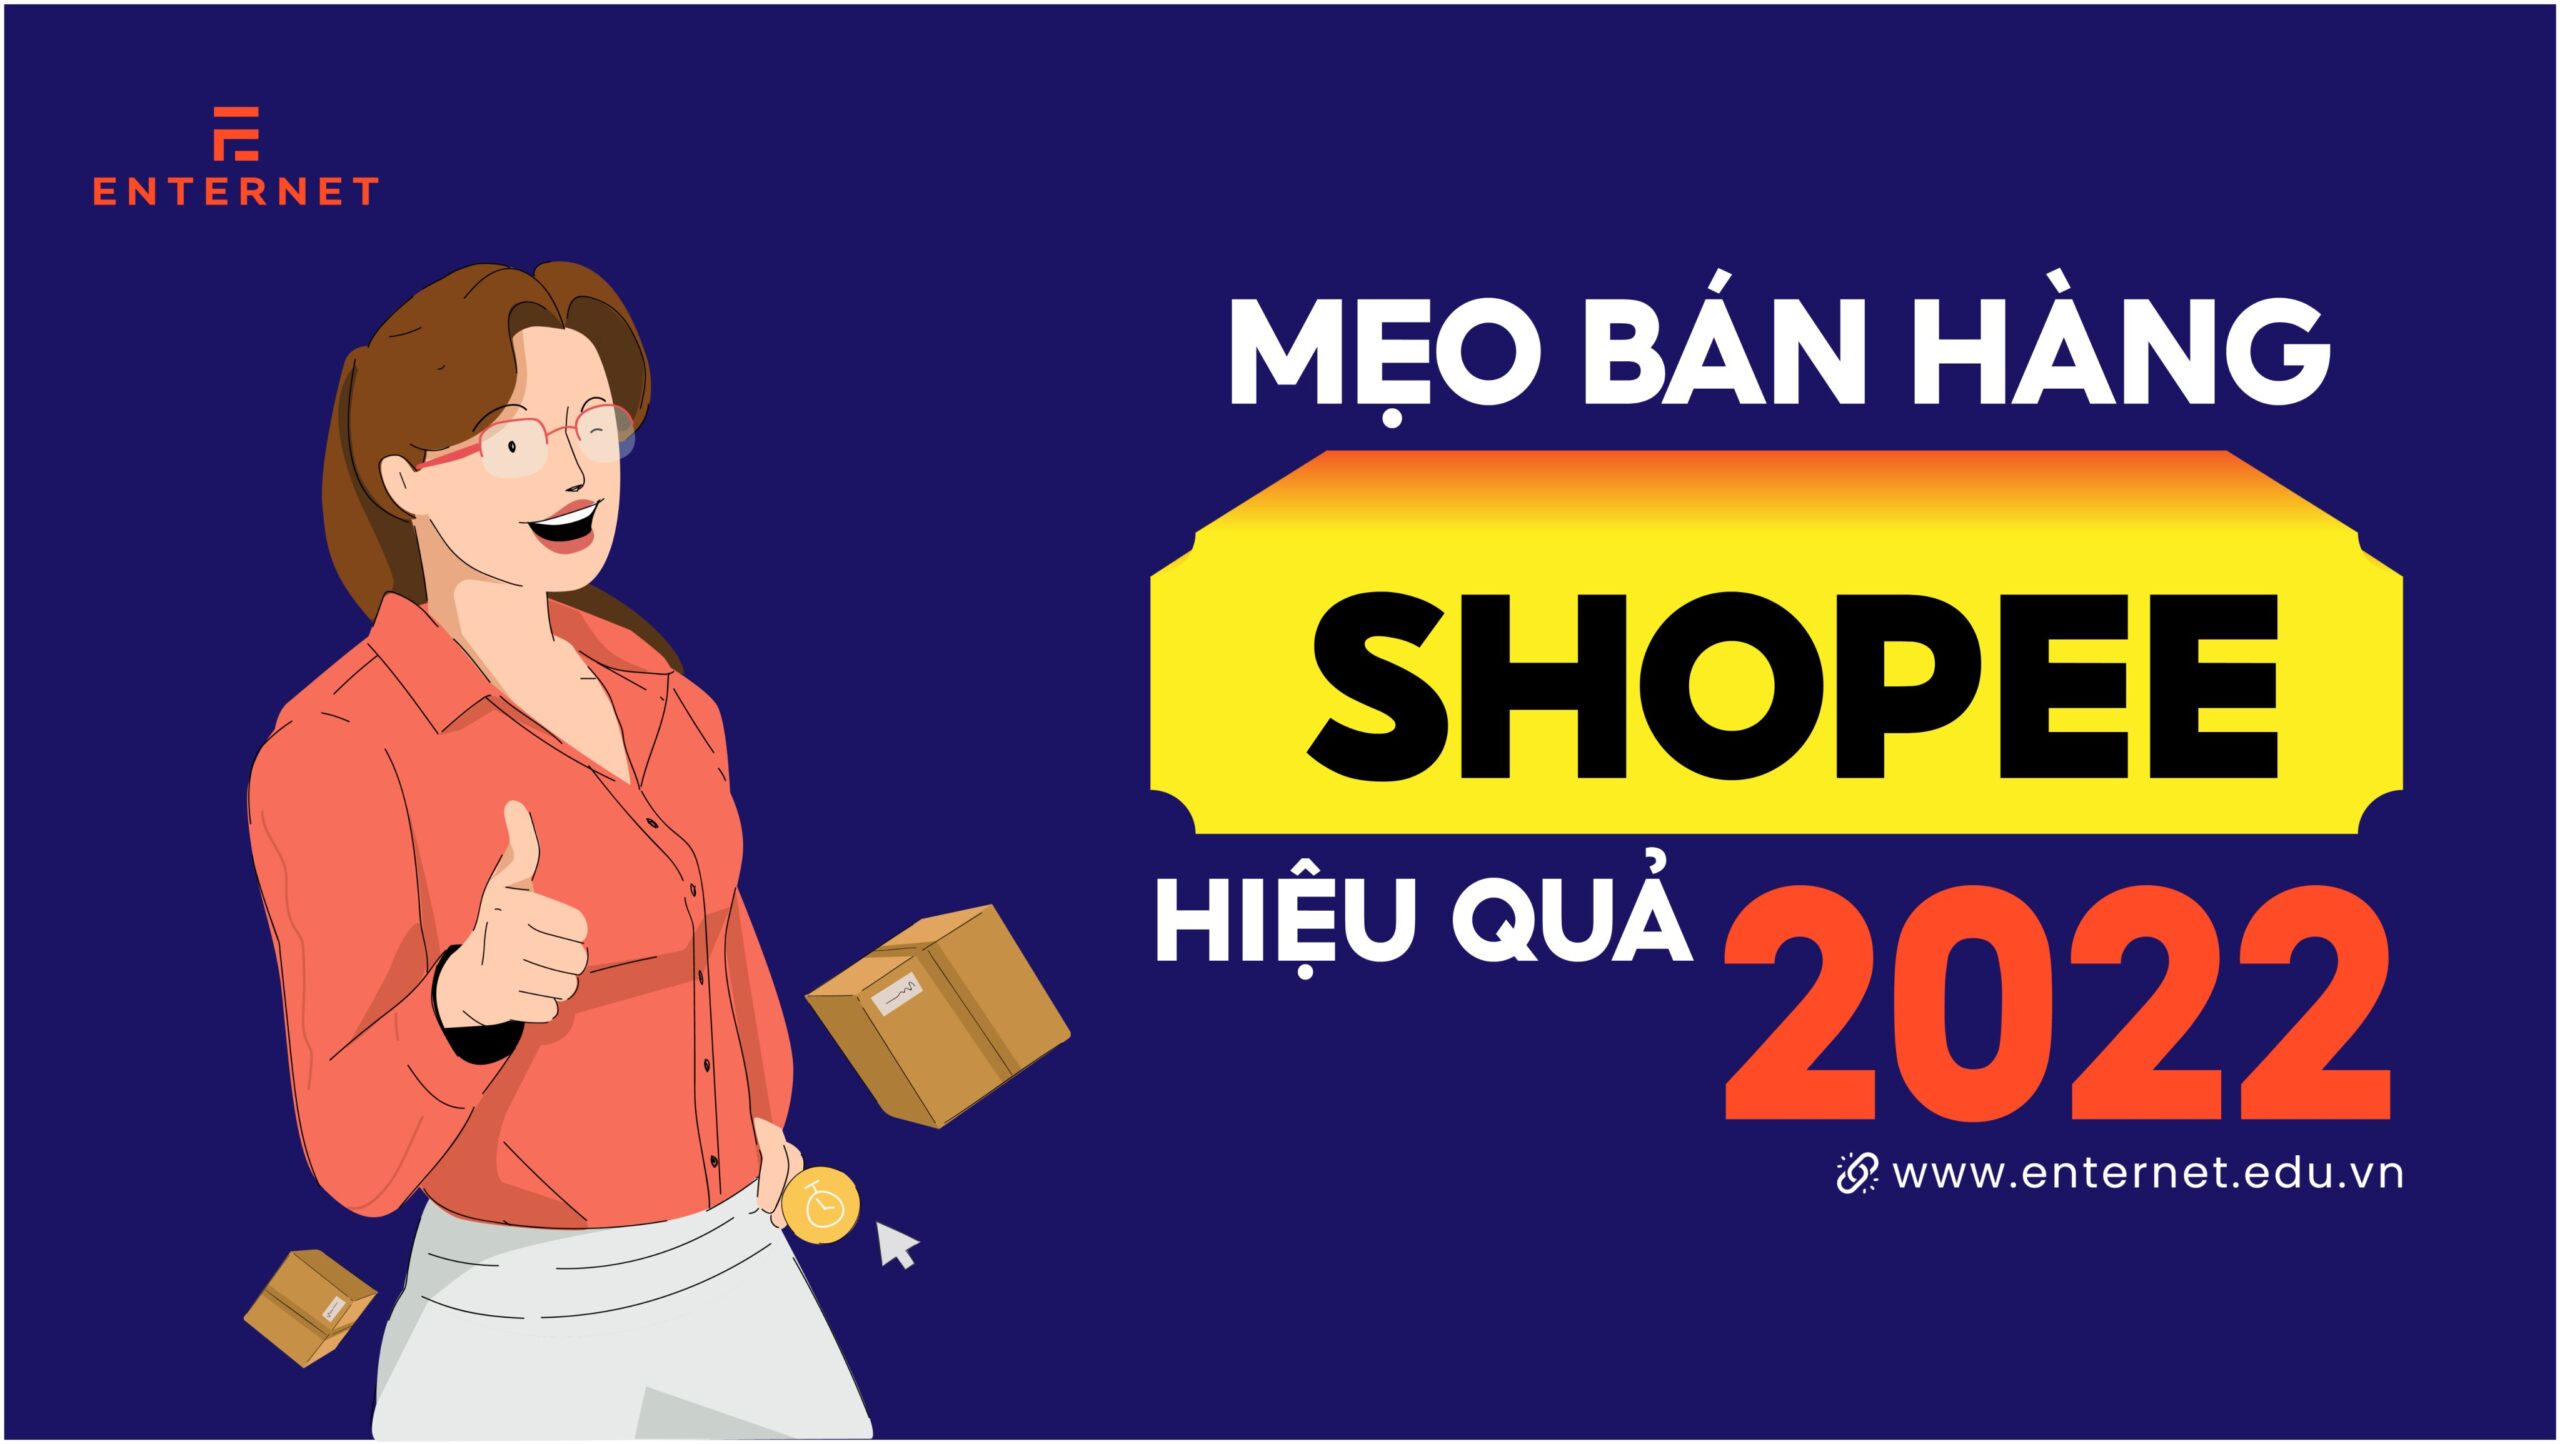 Bán hàng Shopee cần gì? Mẹo bán hàng hiệu quả 2022 (P1)